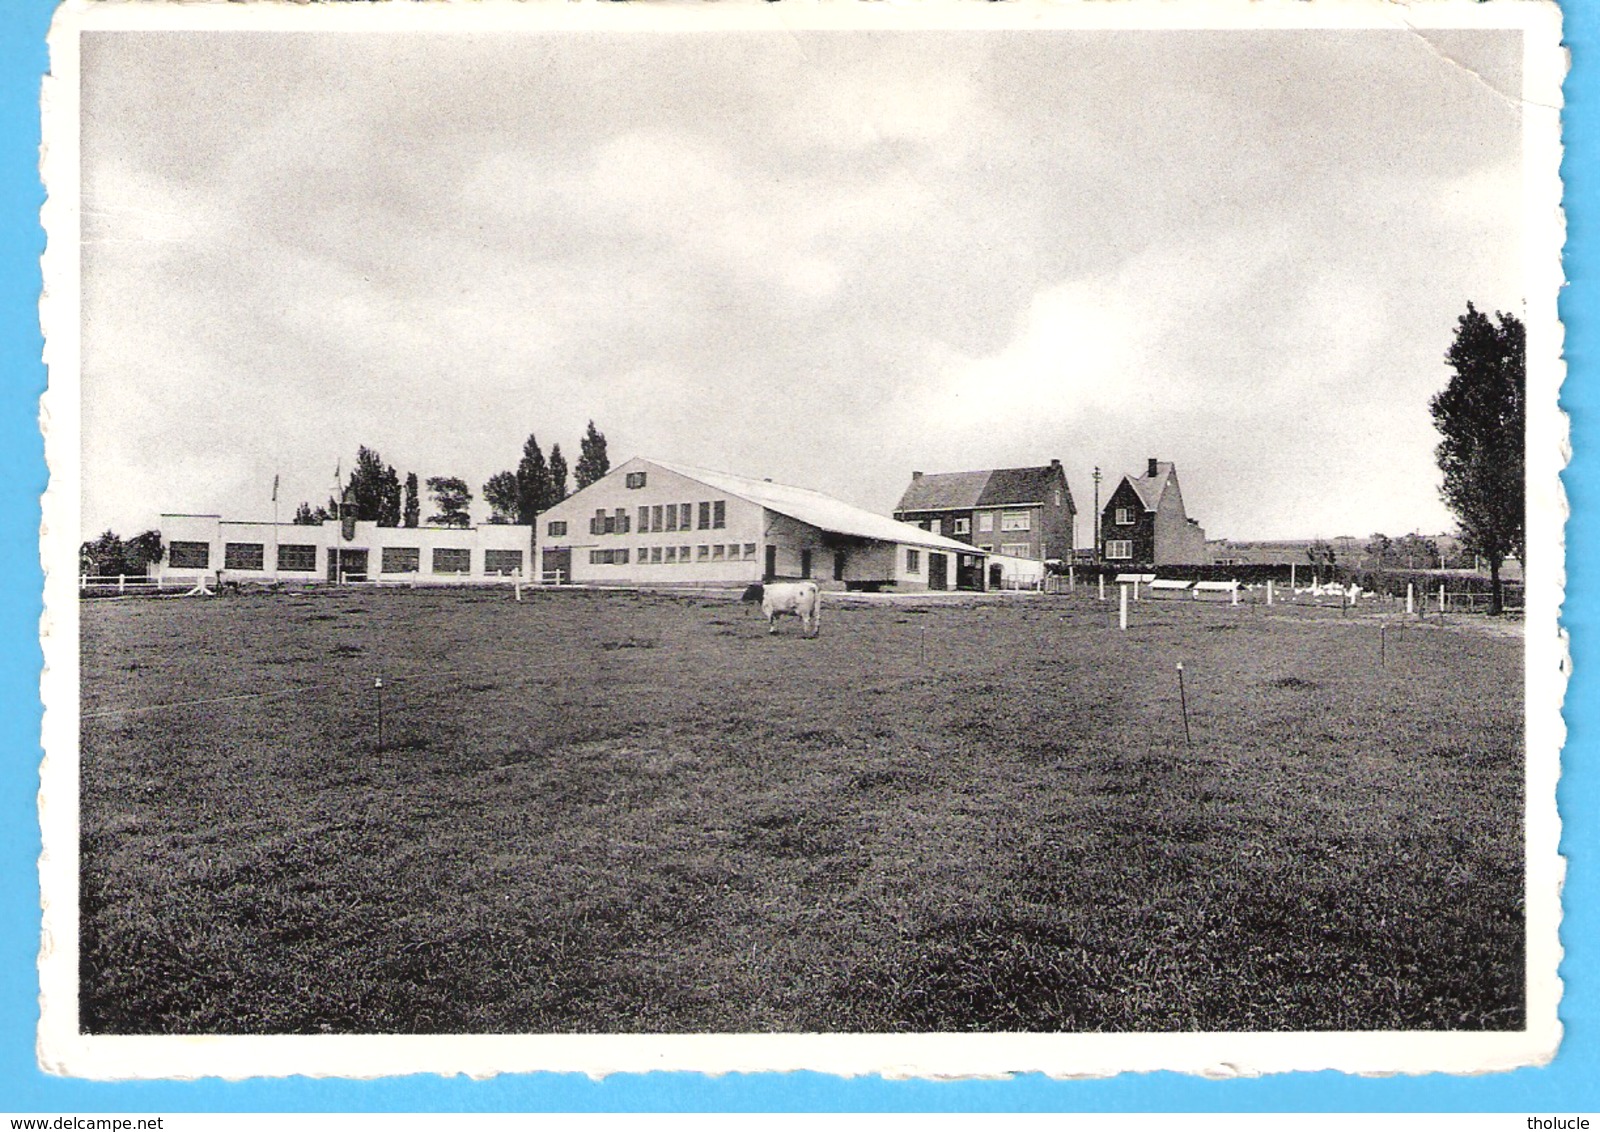 Oudenaarde-Audenarde-+/-1960-Midd.Landbouwschool-Schoolhoeve (School Hoeve)-Achterzijde-Koe-vache - Oudenaarde